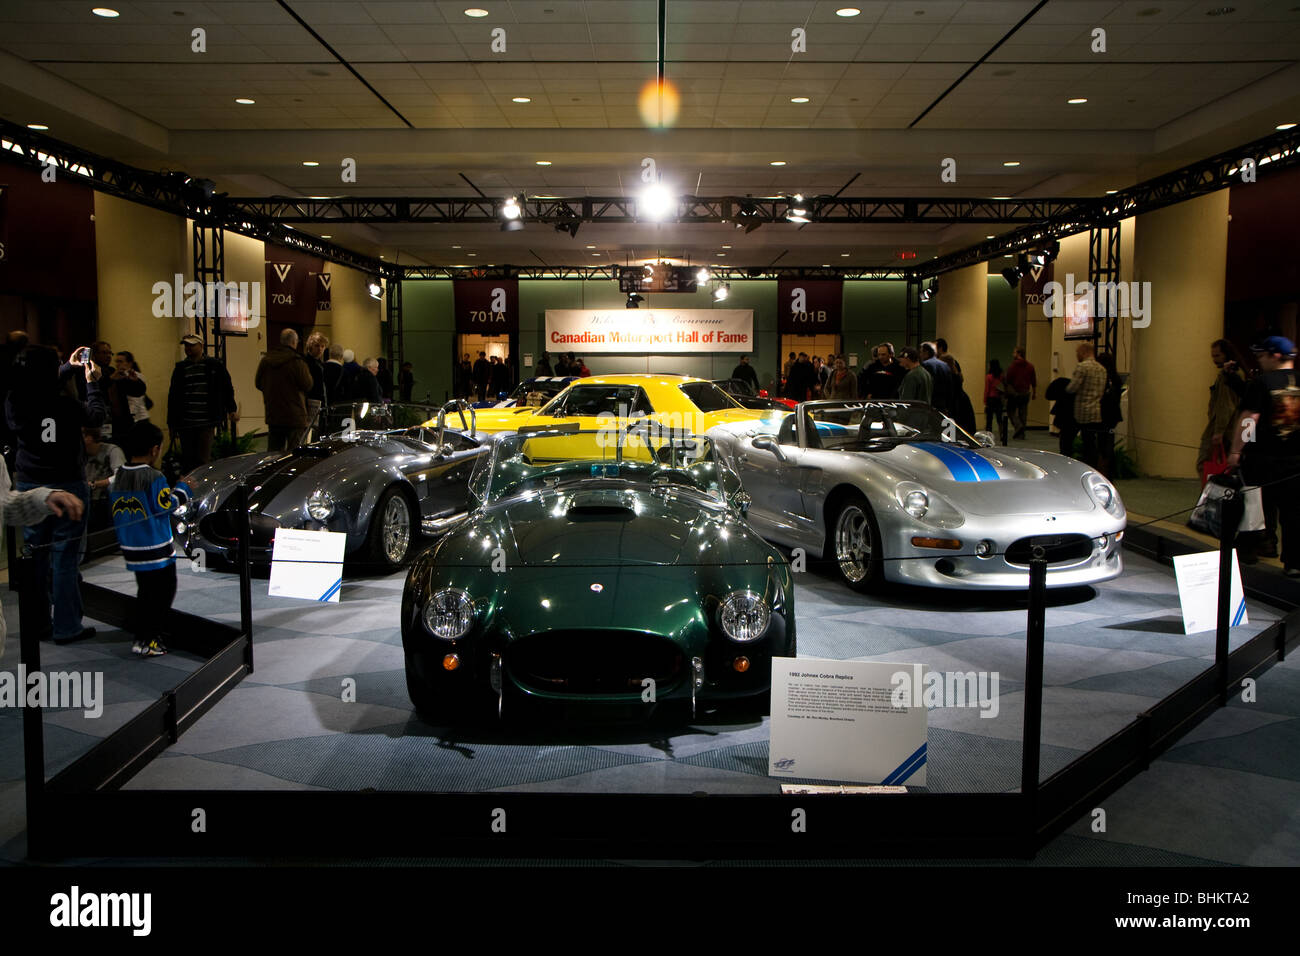 Eine Sammlung von Oldtimern auf dem Display bei 2010 Canadian International AutoShow (CIAS) in Toronto, Ontario, Kanada. Stockfoto